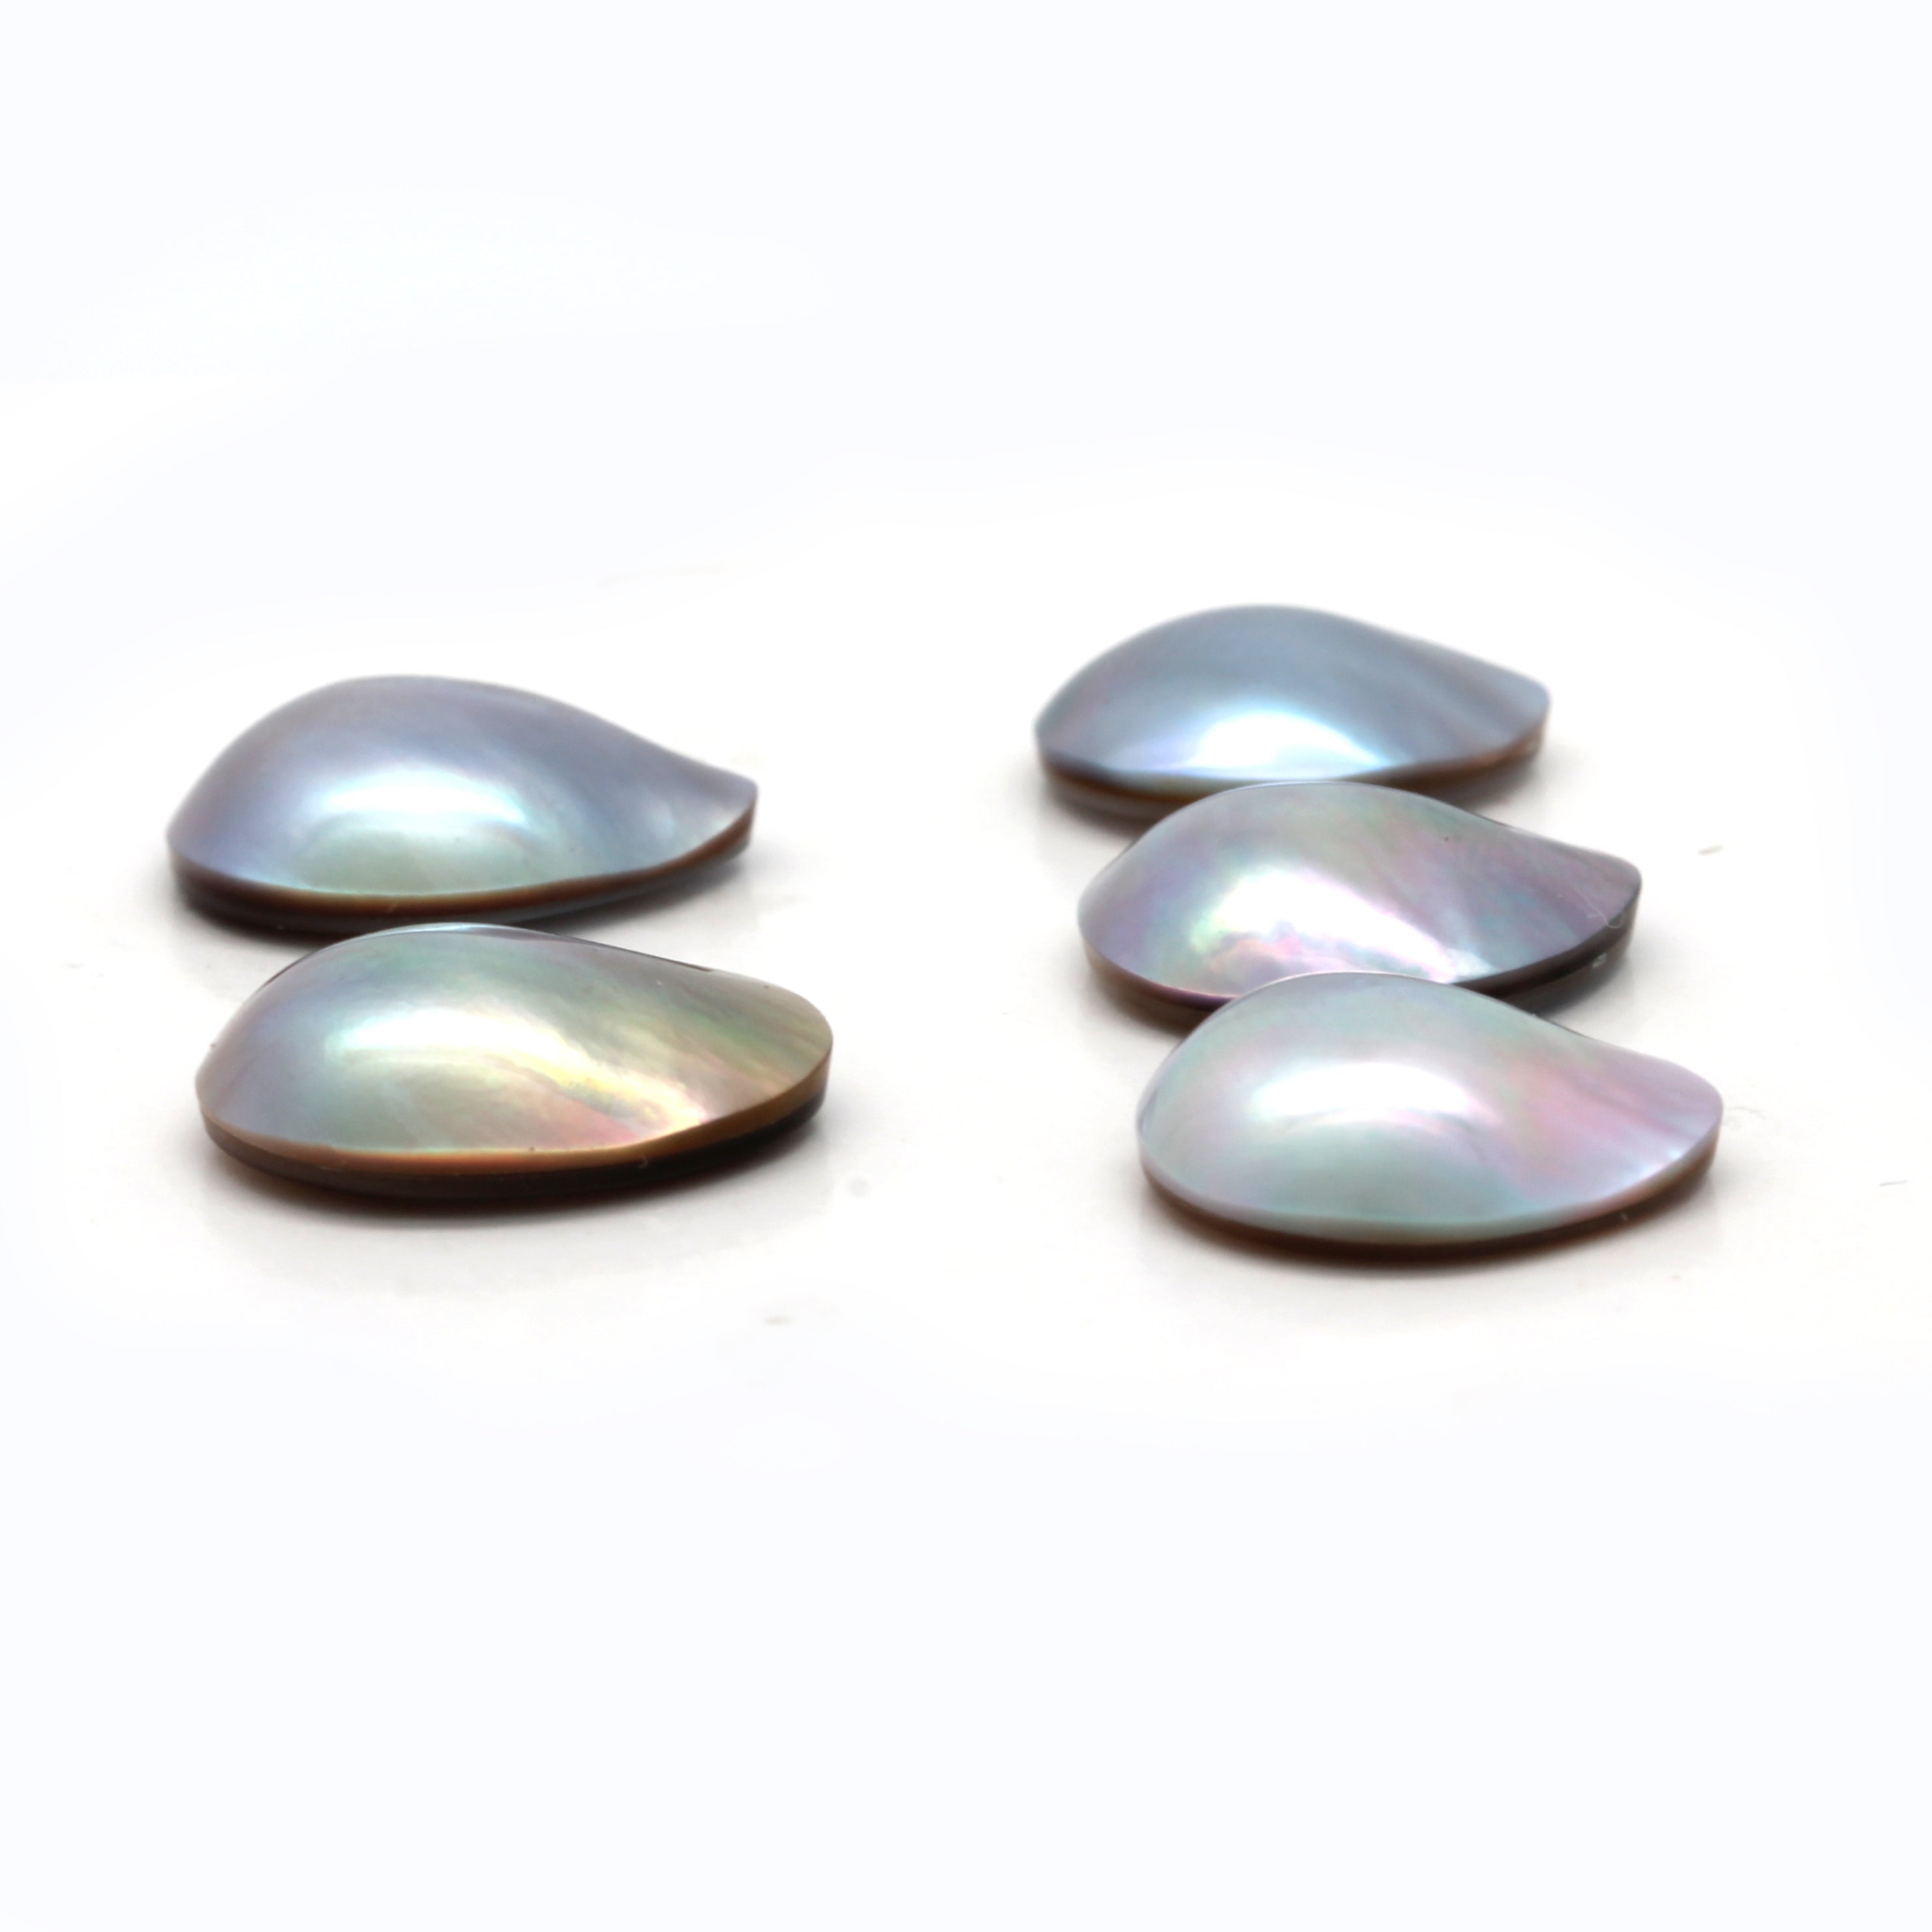 5 Cortez Mabe Pearls "A" Grade